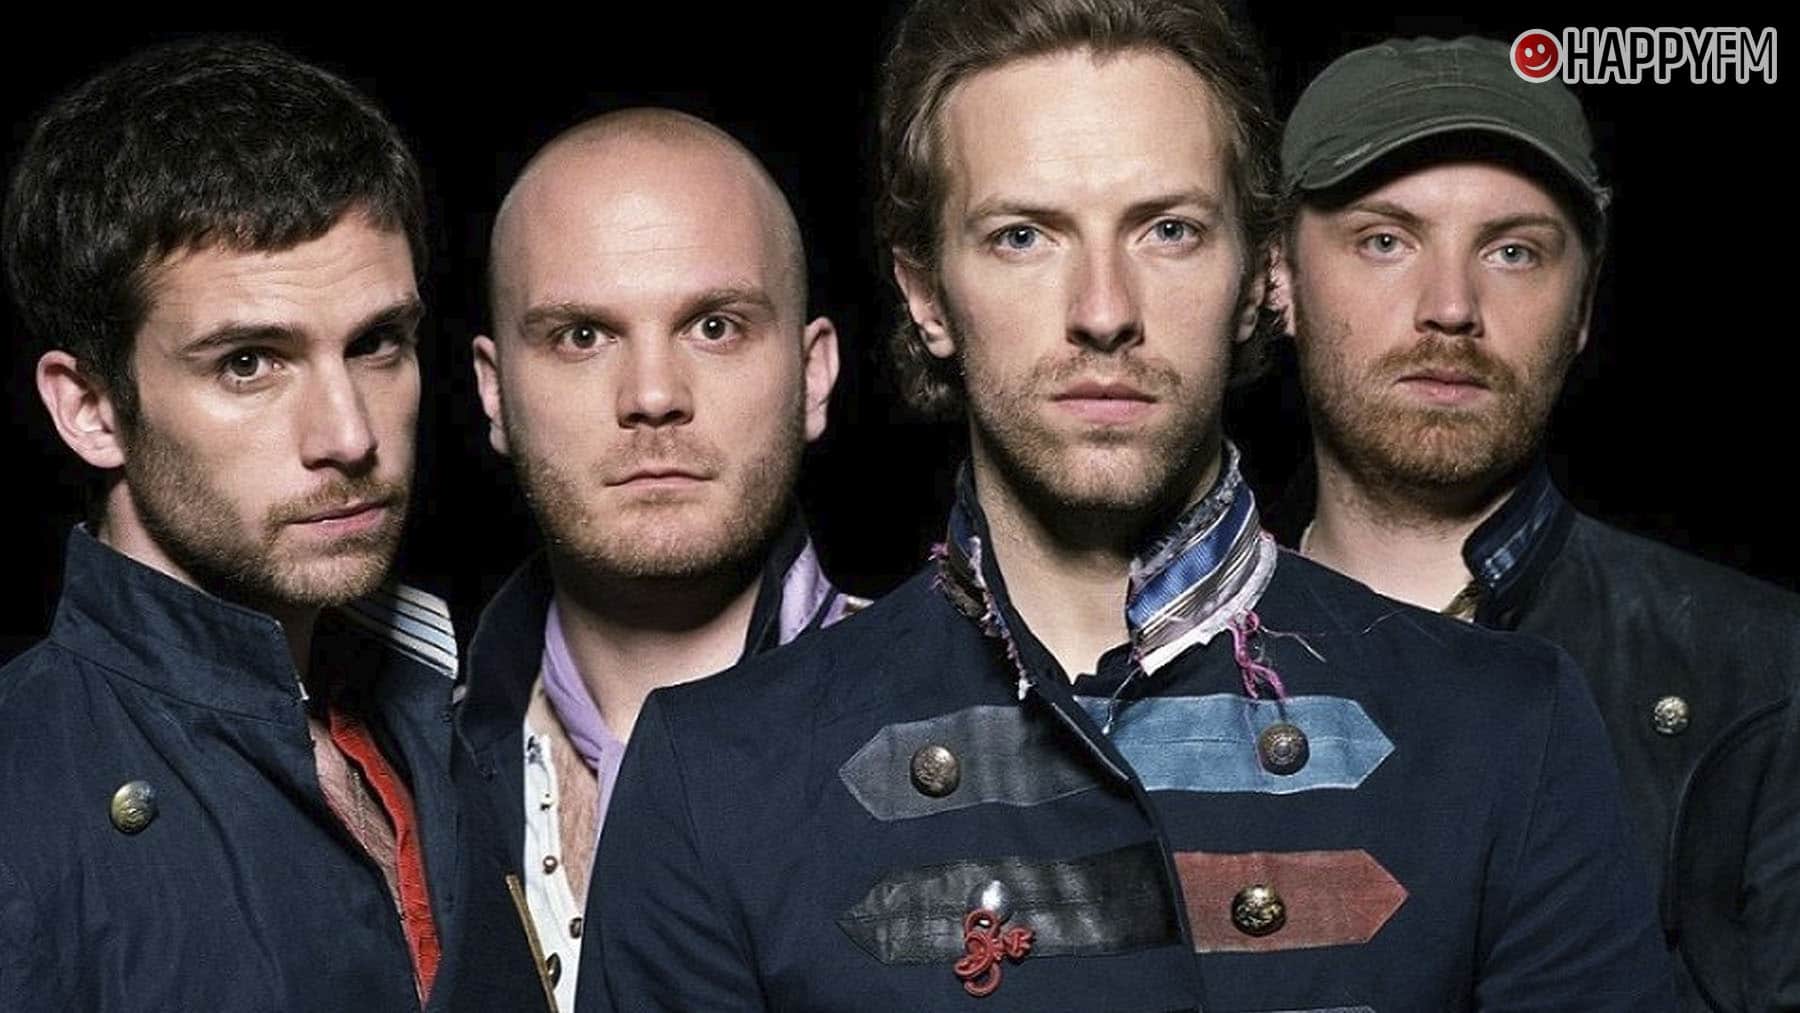 ‘Viva la vida’, de Coldplay: letra (en español), historia y vídeo